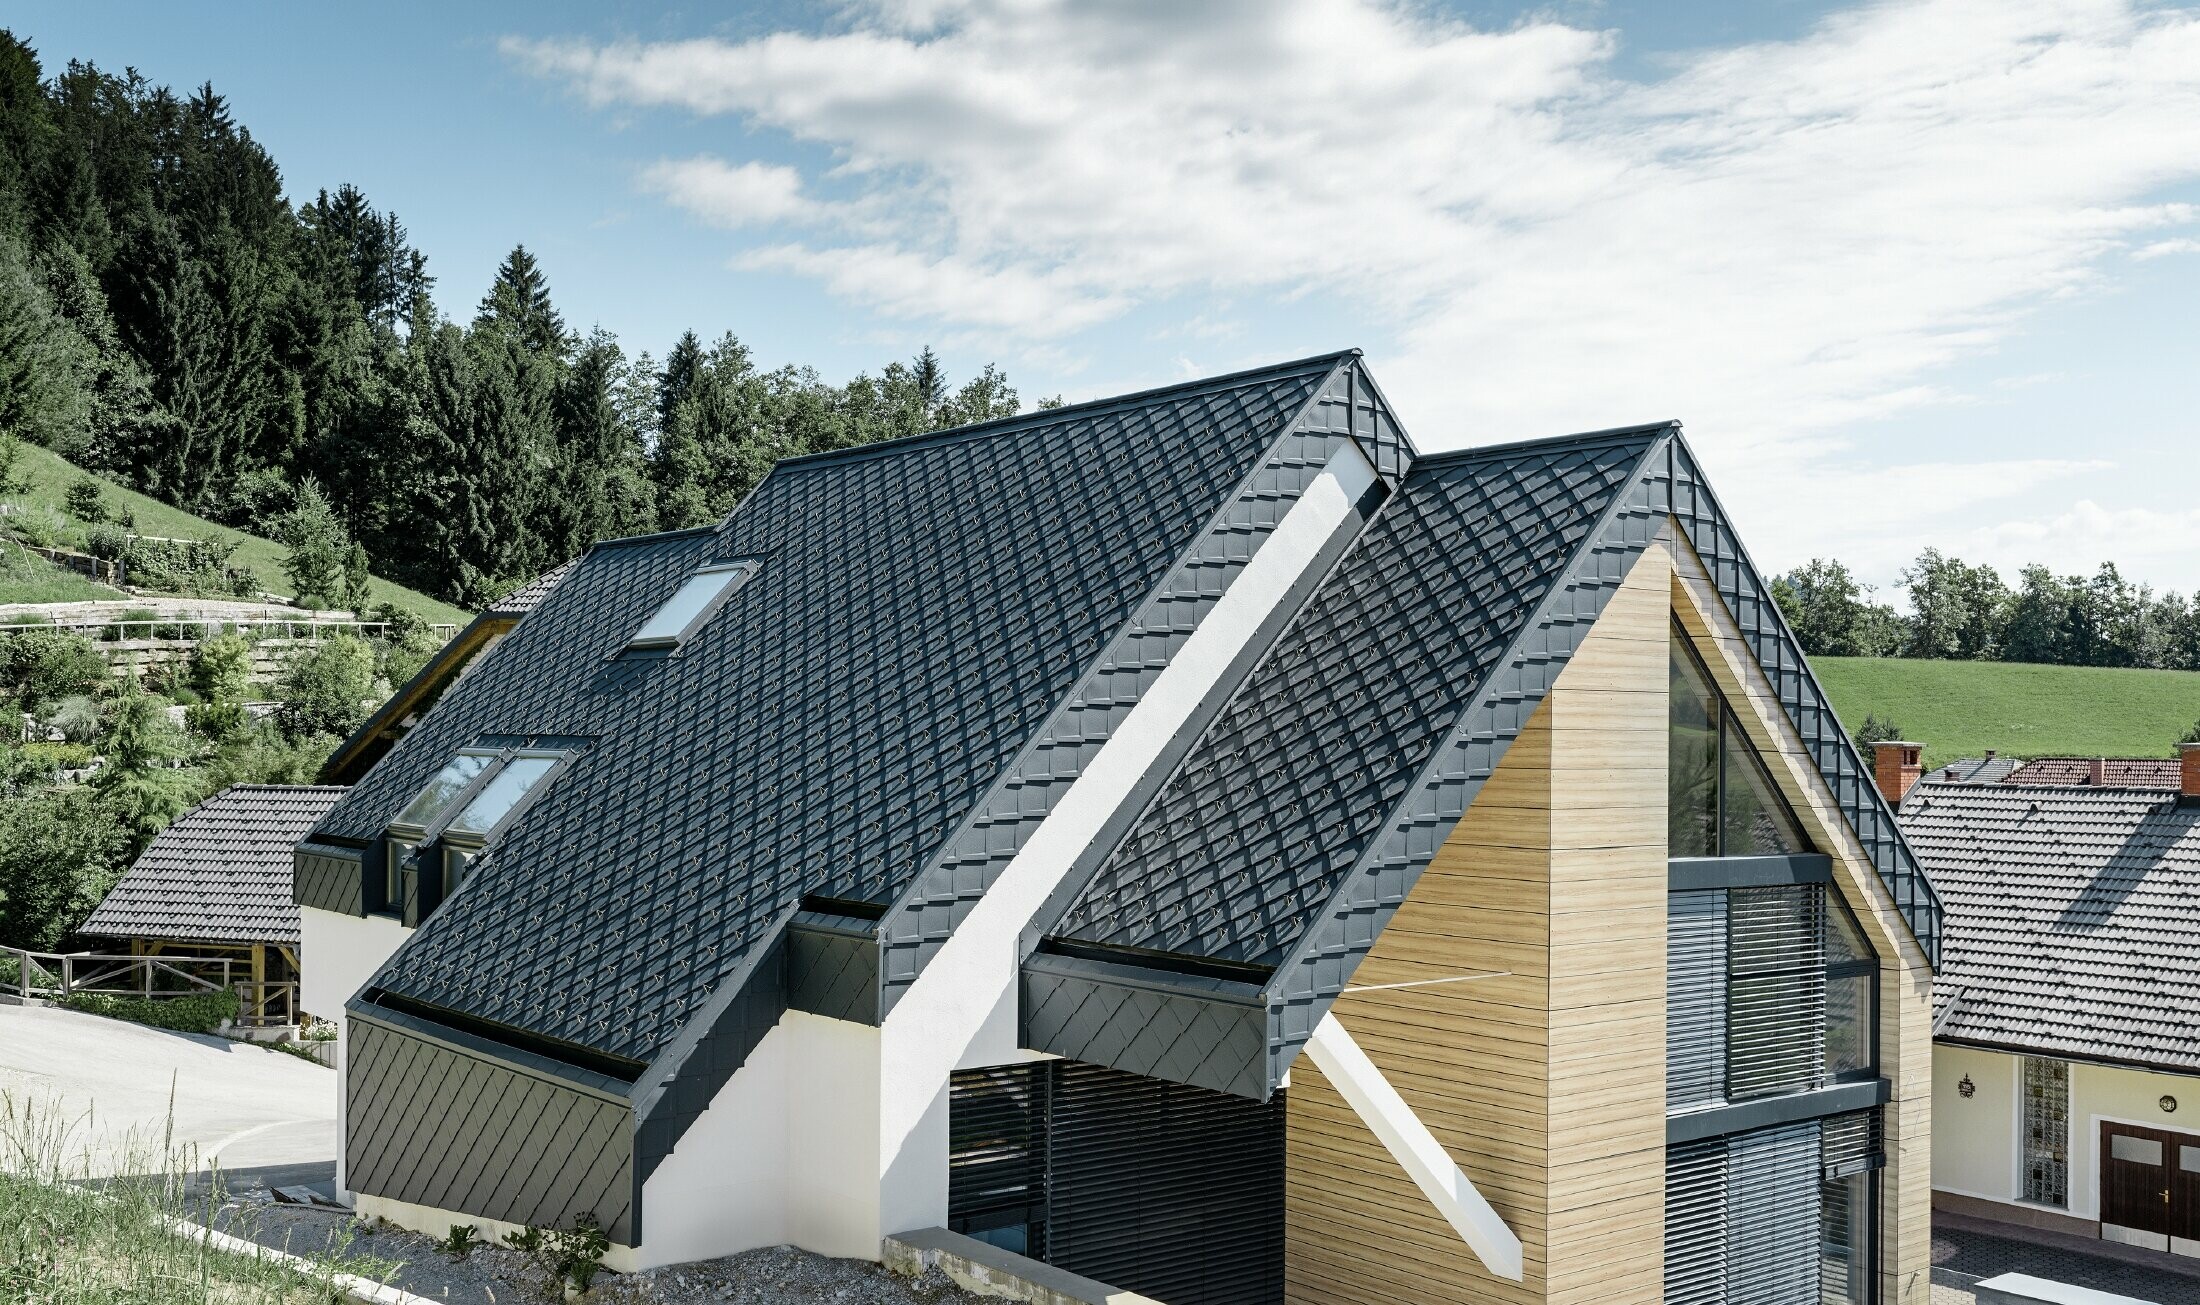 Nyeregtetős családi ház tetőtúlnyúlás nélkül, fahatású homlokzattal, antracitszínű alumínium tetővel